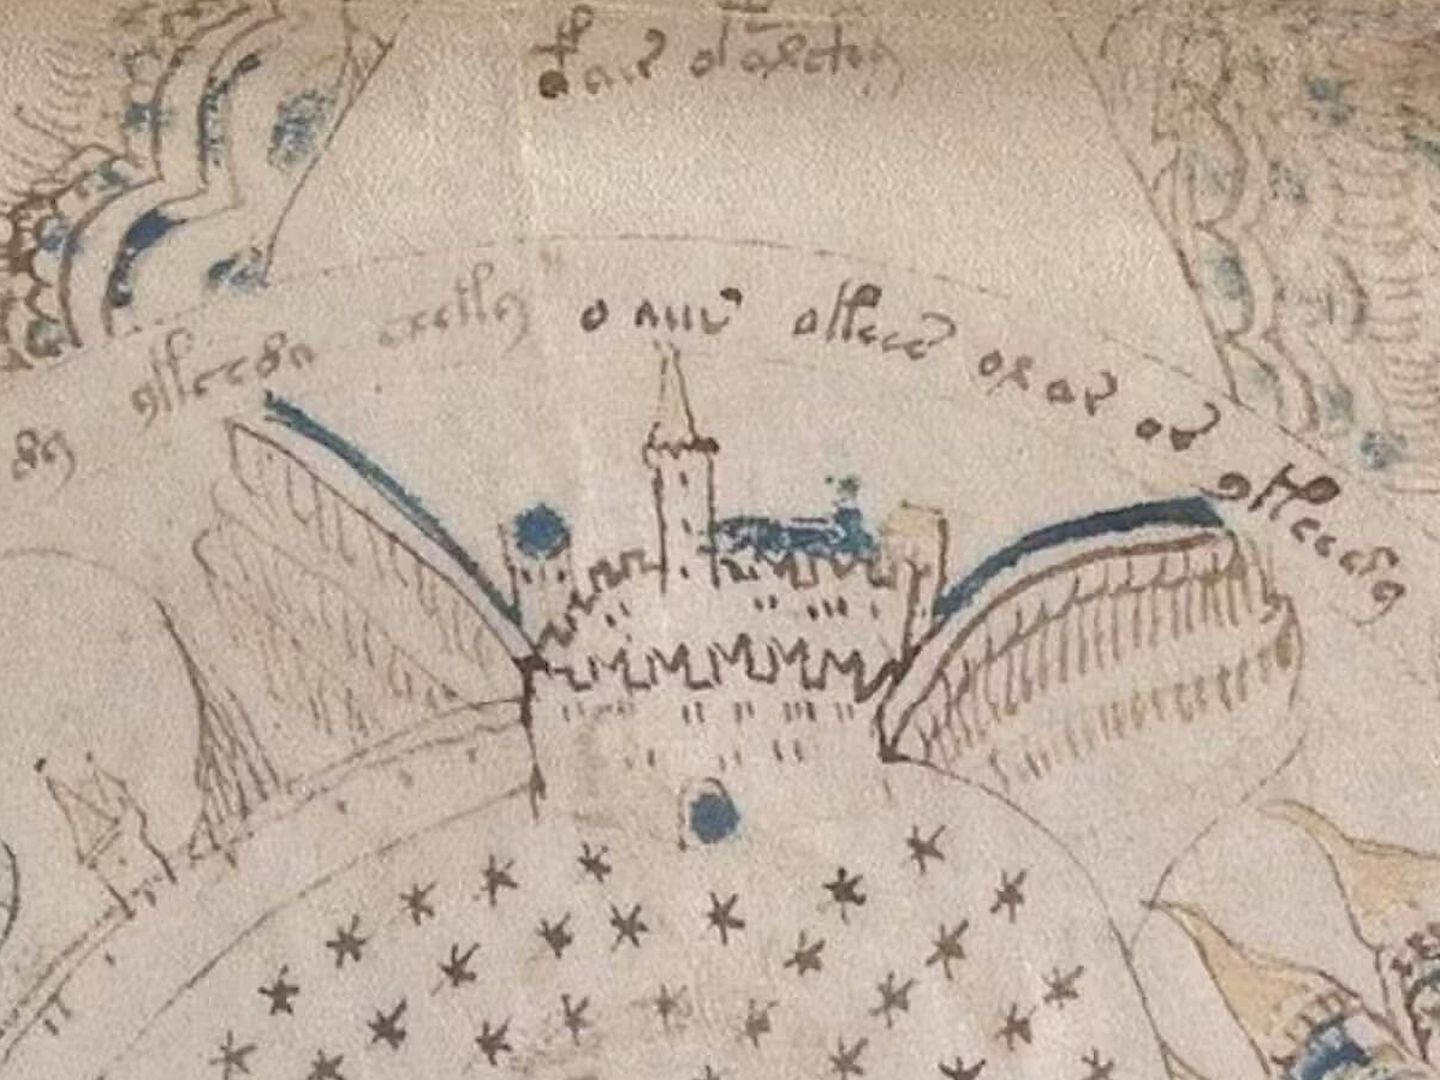 Primer plano de un castillo incrustado en la ilustración. (Universidad de Yale)